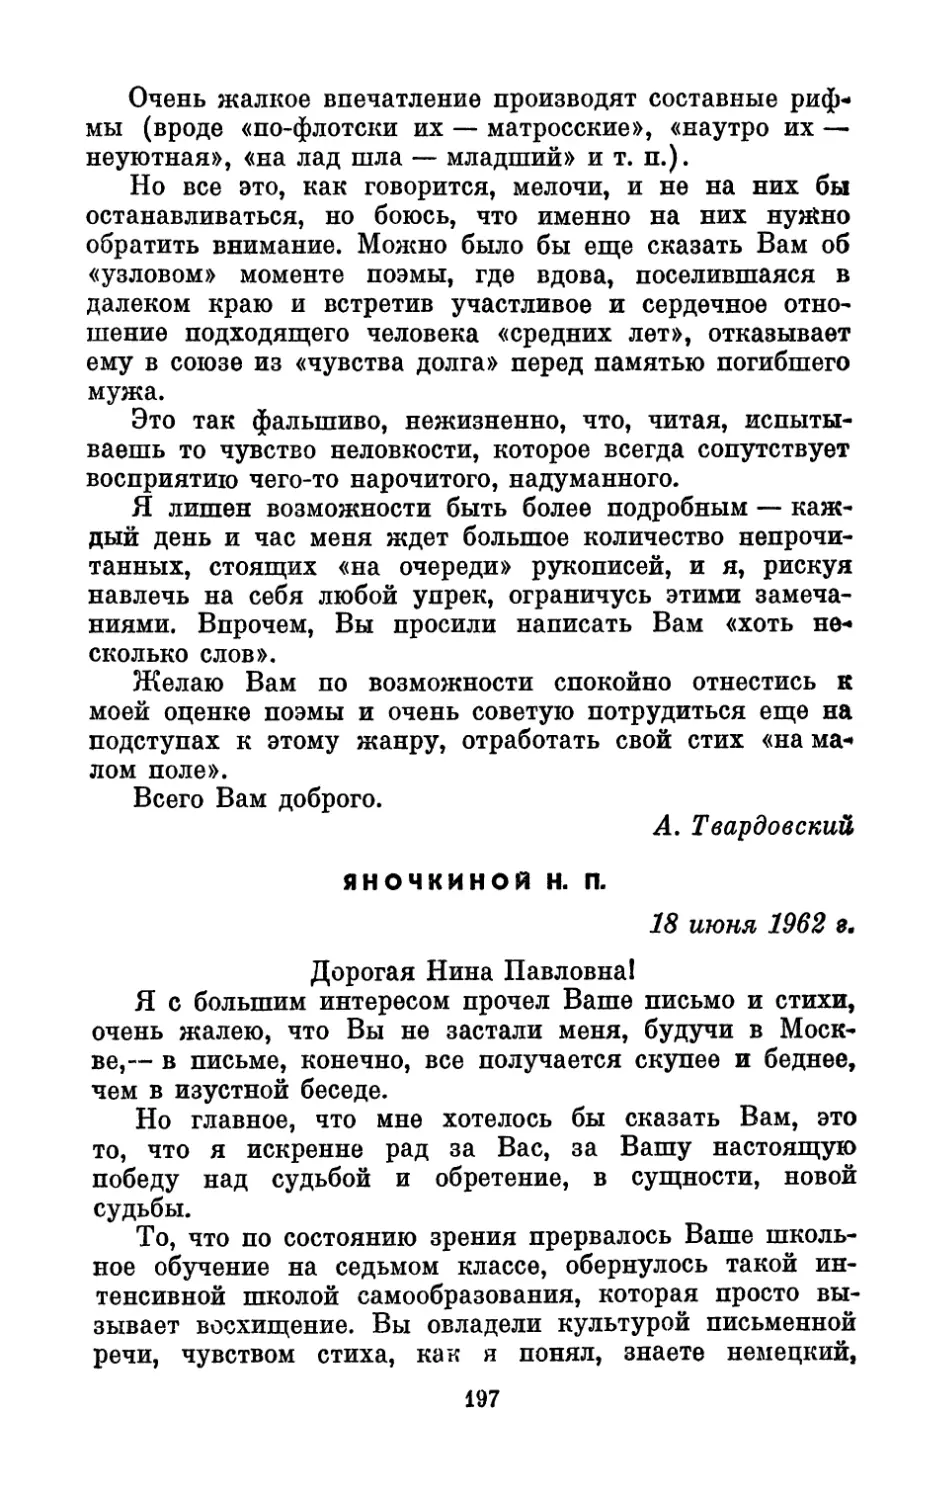 Яночкиной Н. П., 18 июня 1962 г.